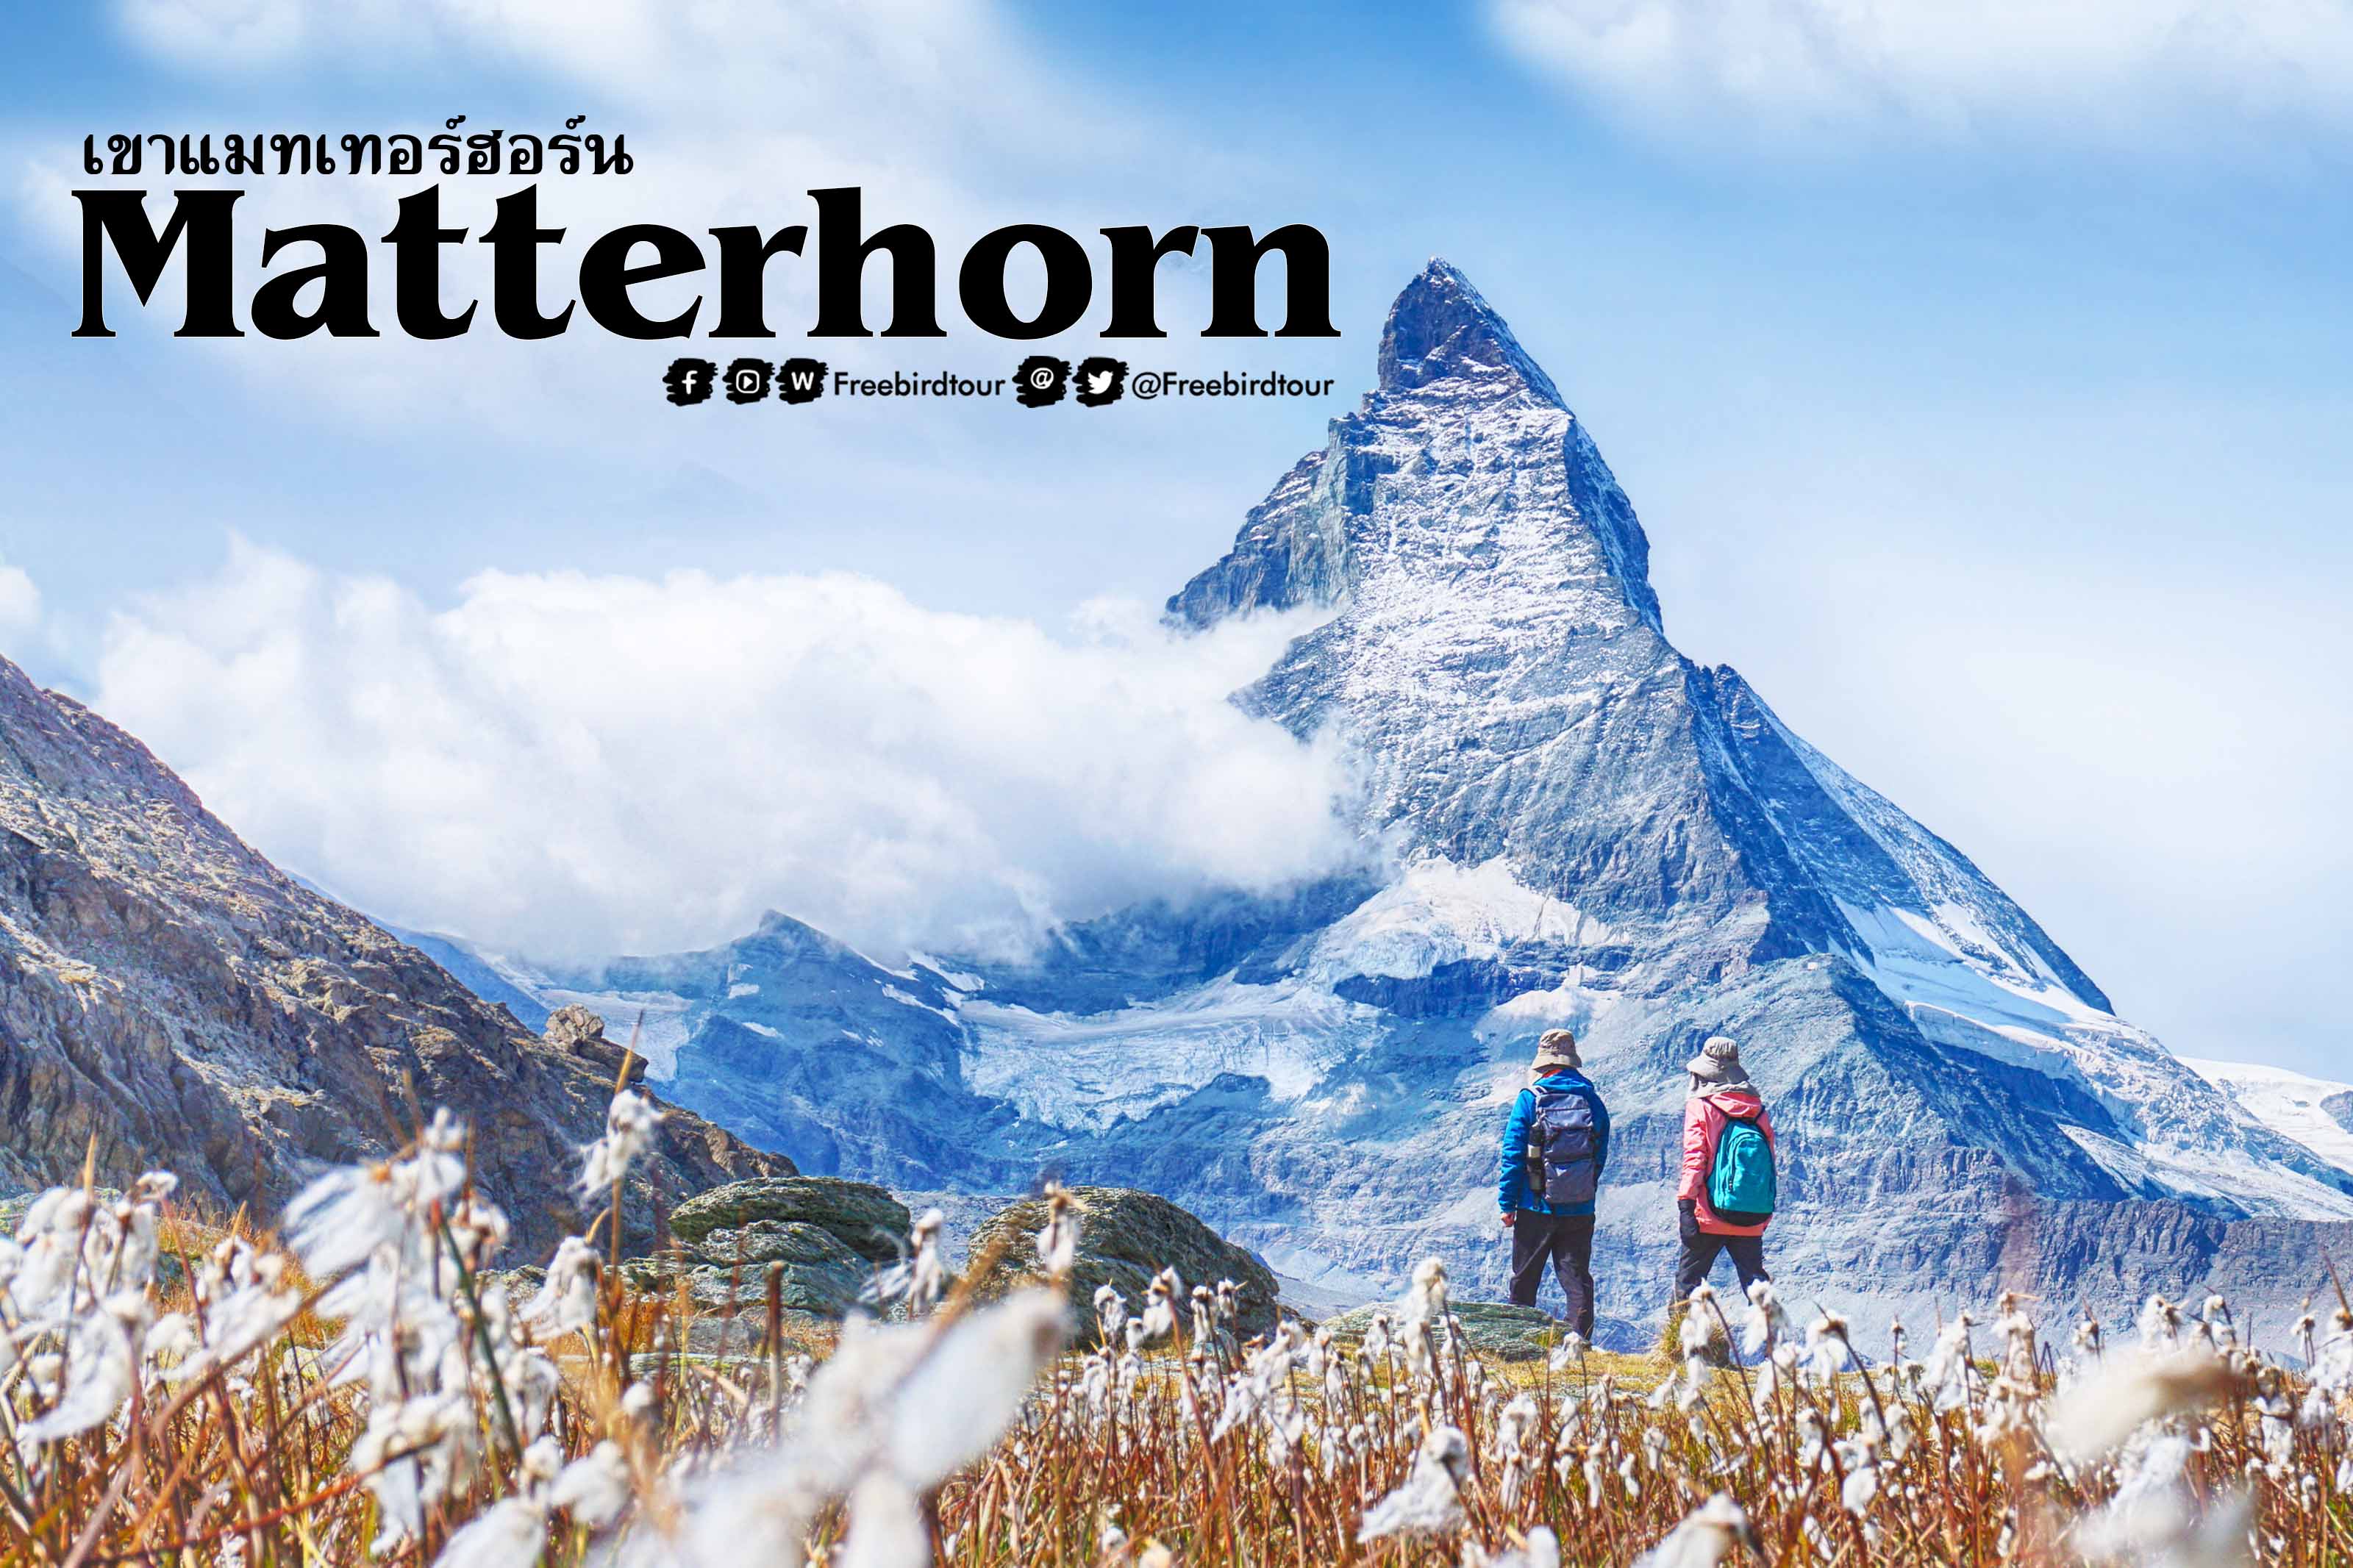 เขาแมทเทอร์ฮอร์น (Matterhorn)